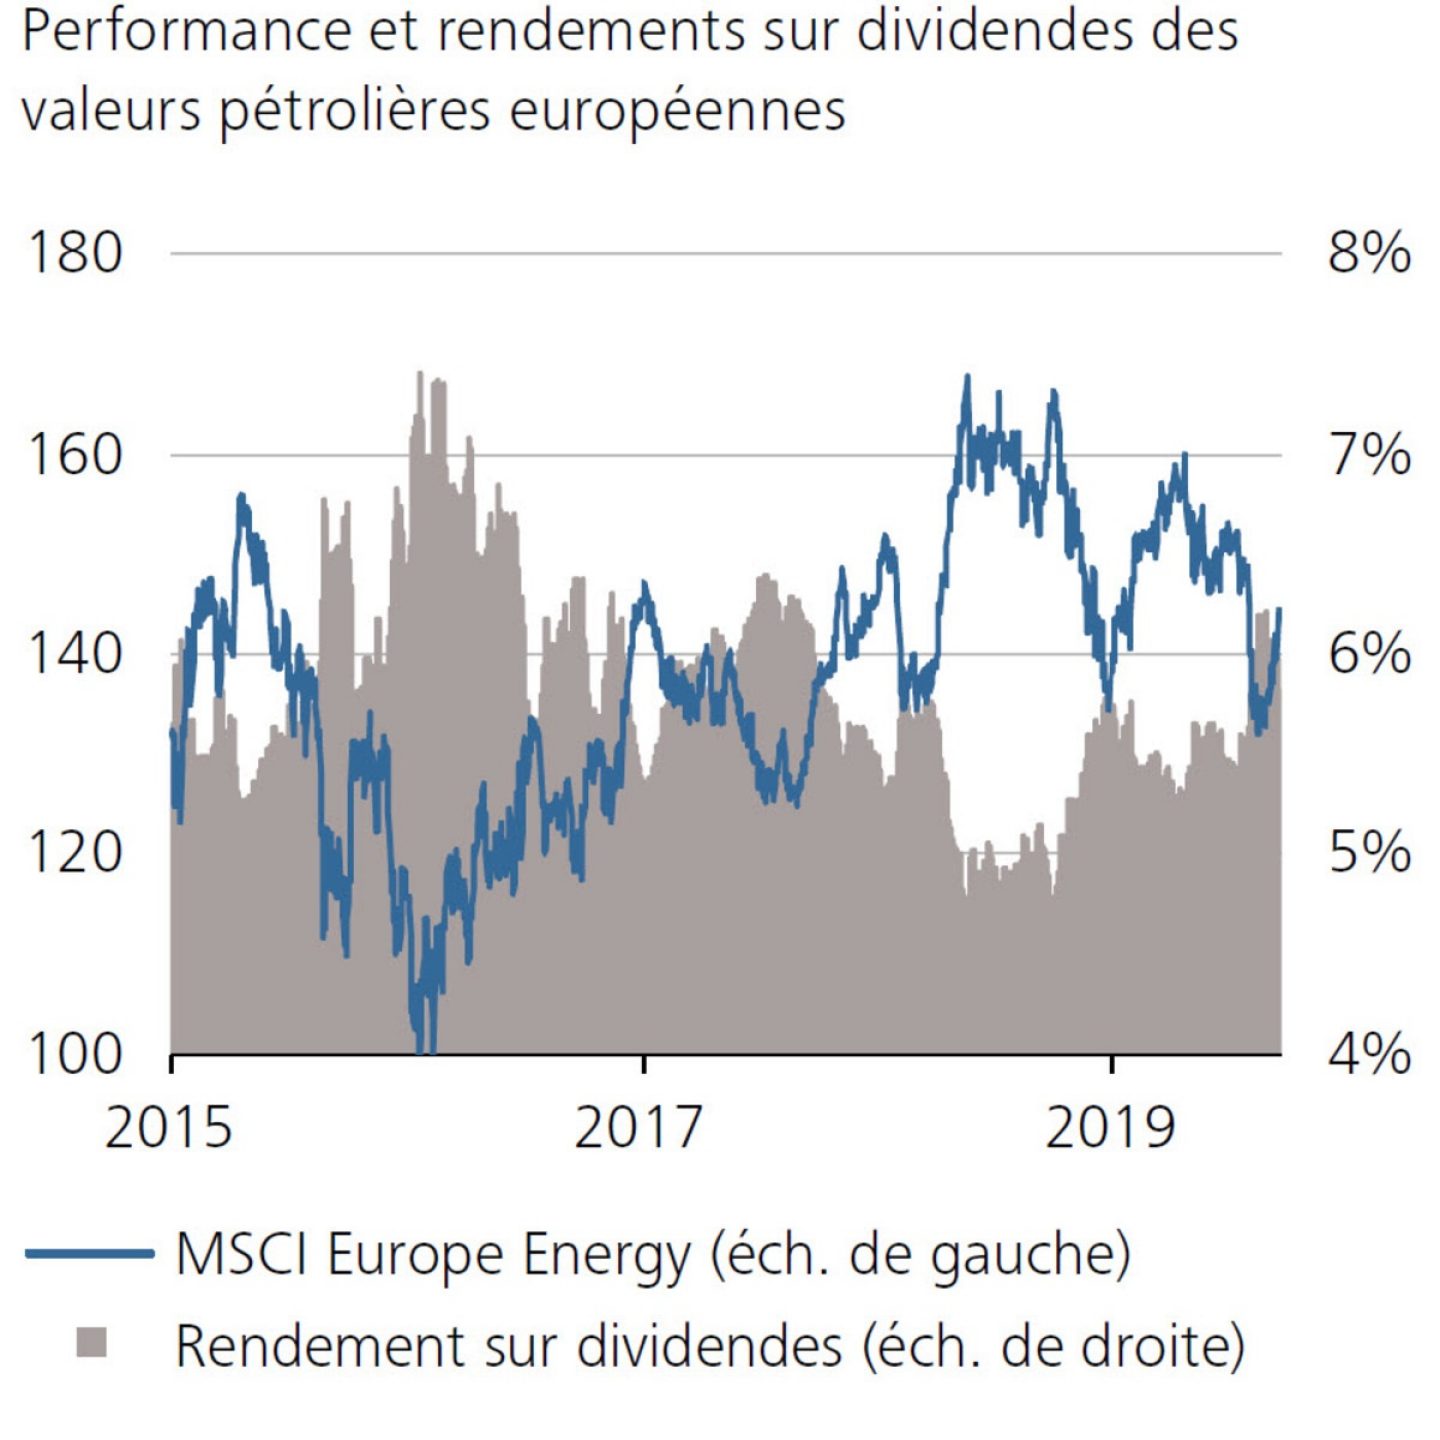 Performance et rendements sur dividendes des valeurs pétrolières européennes